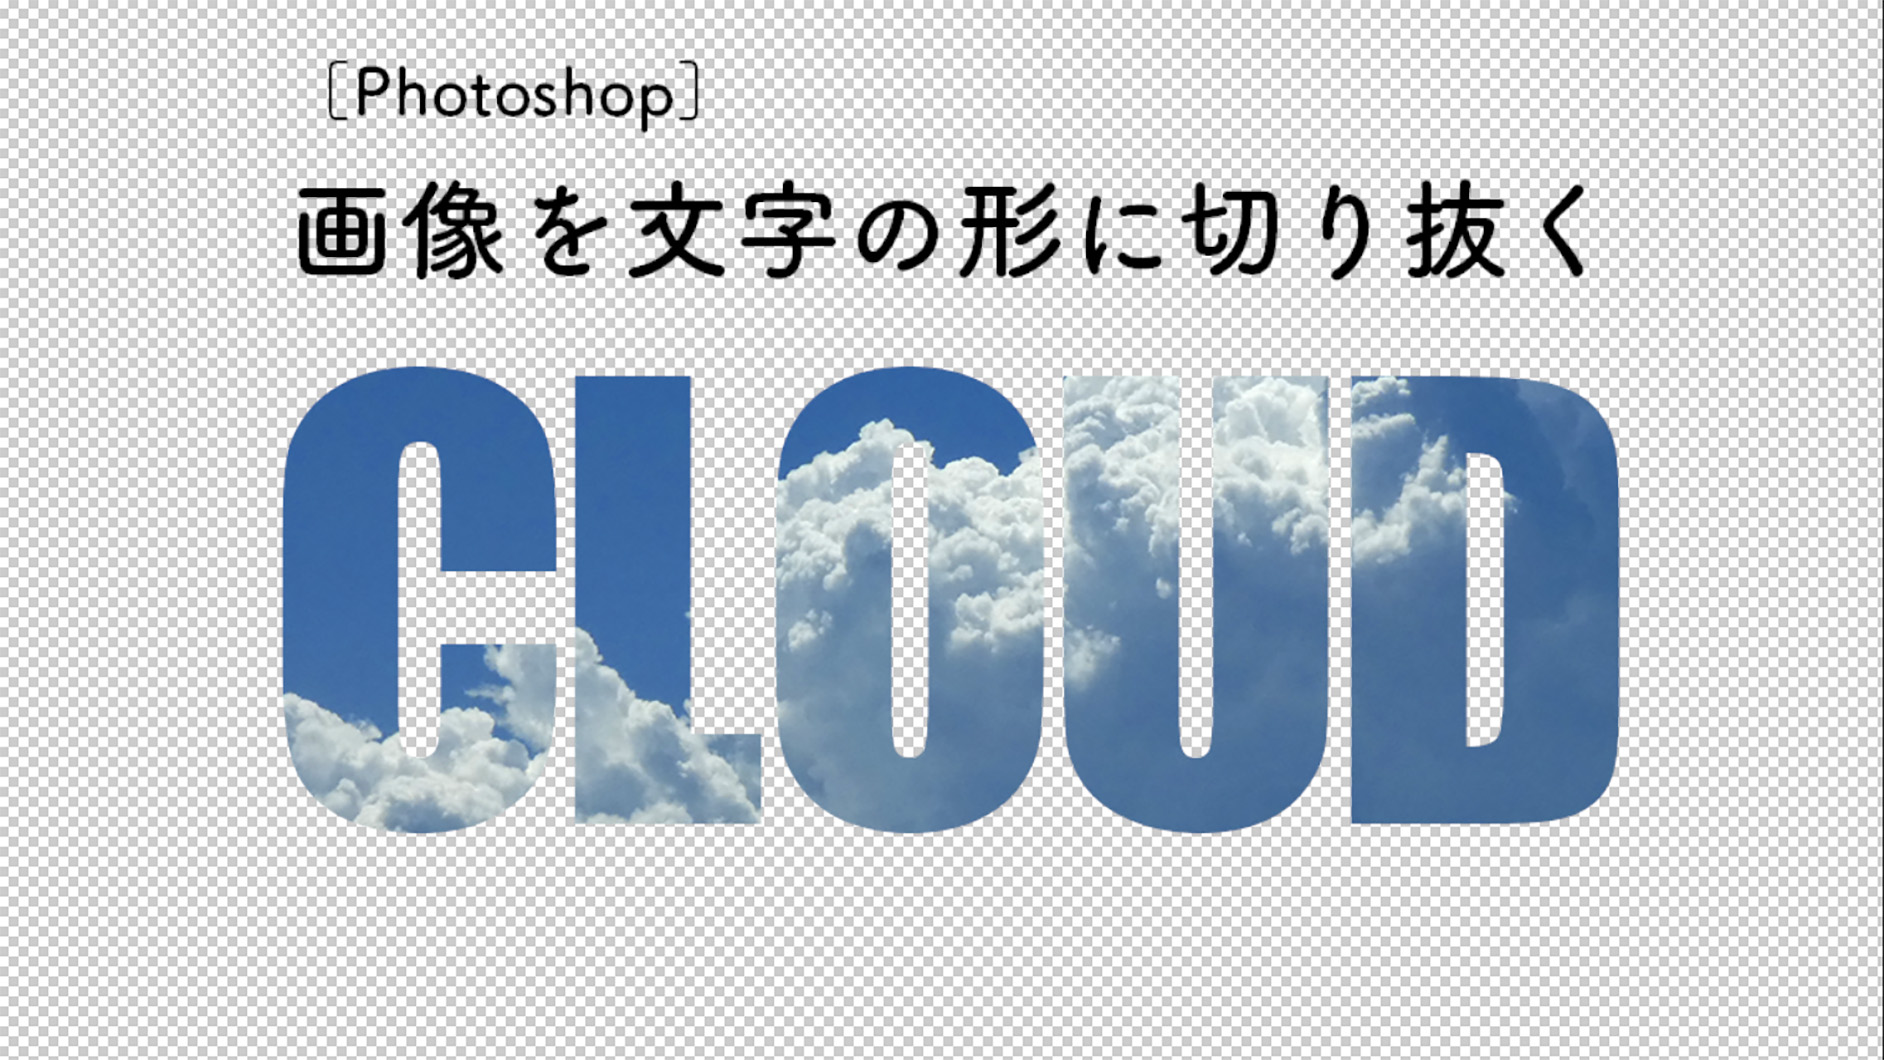 Photoshopで画像を文字の形に切り抜く 文字の形で型抜きする 切り抜き Photoshop逆引き辞典 デザインってオモシロイ Mdn Design Interactive